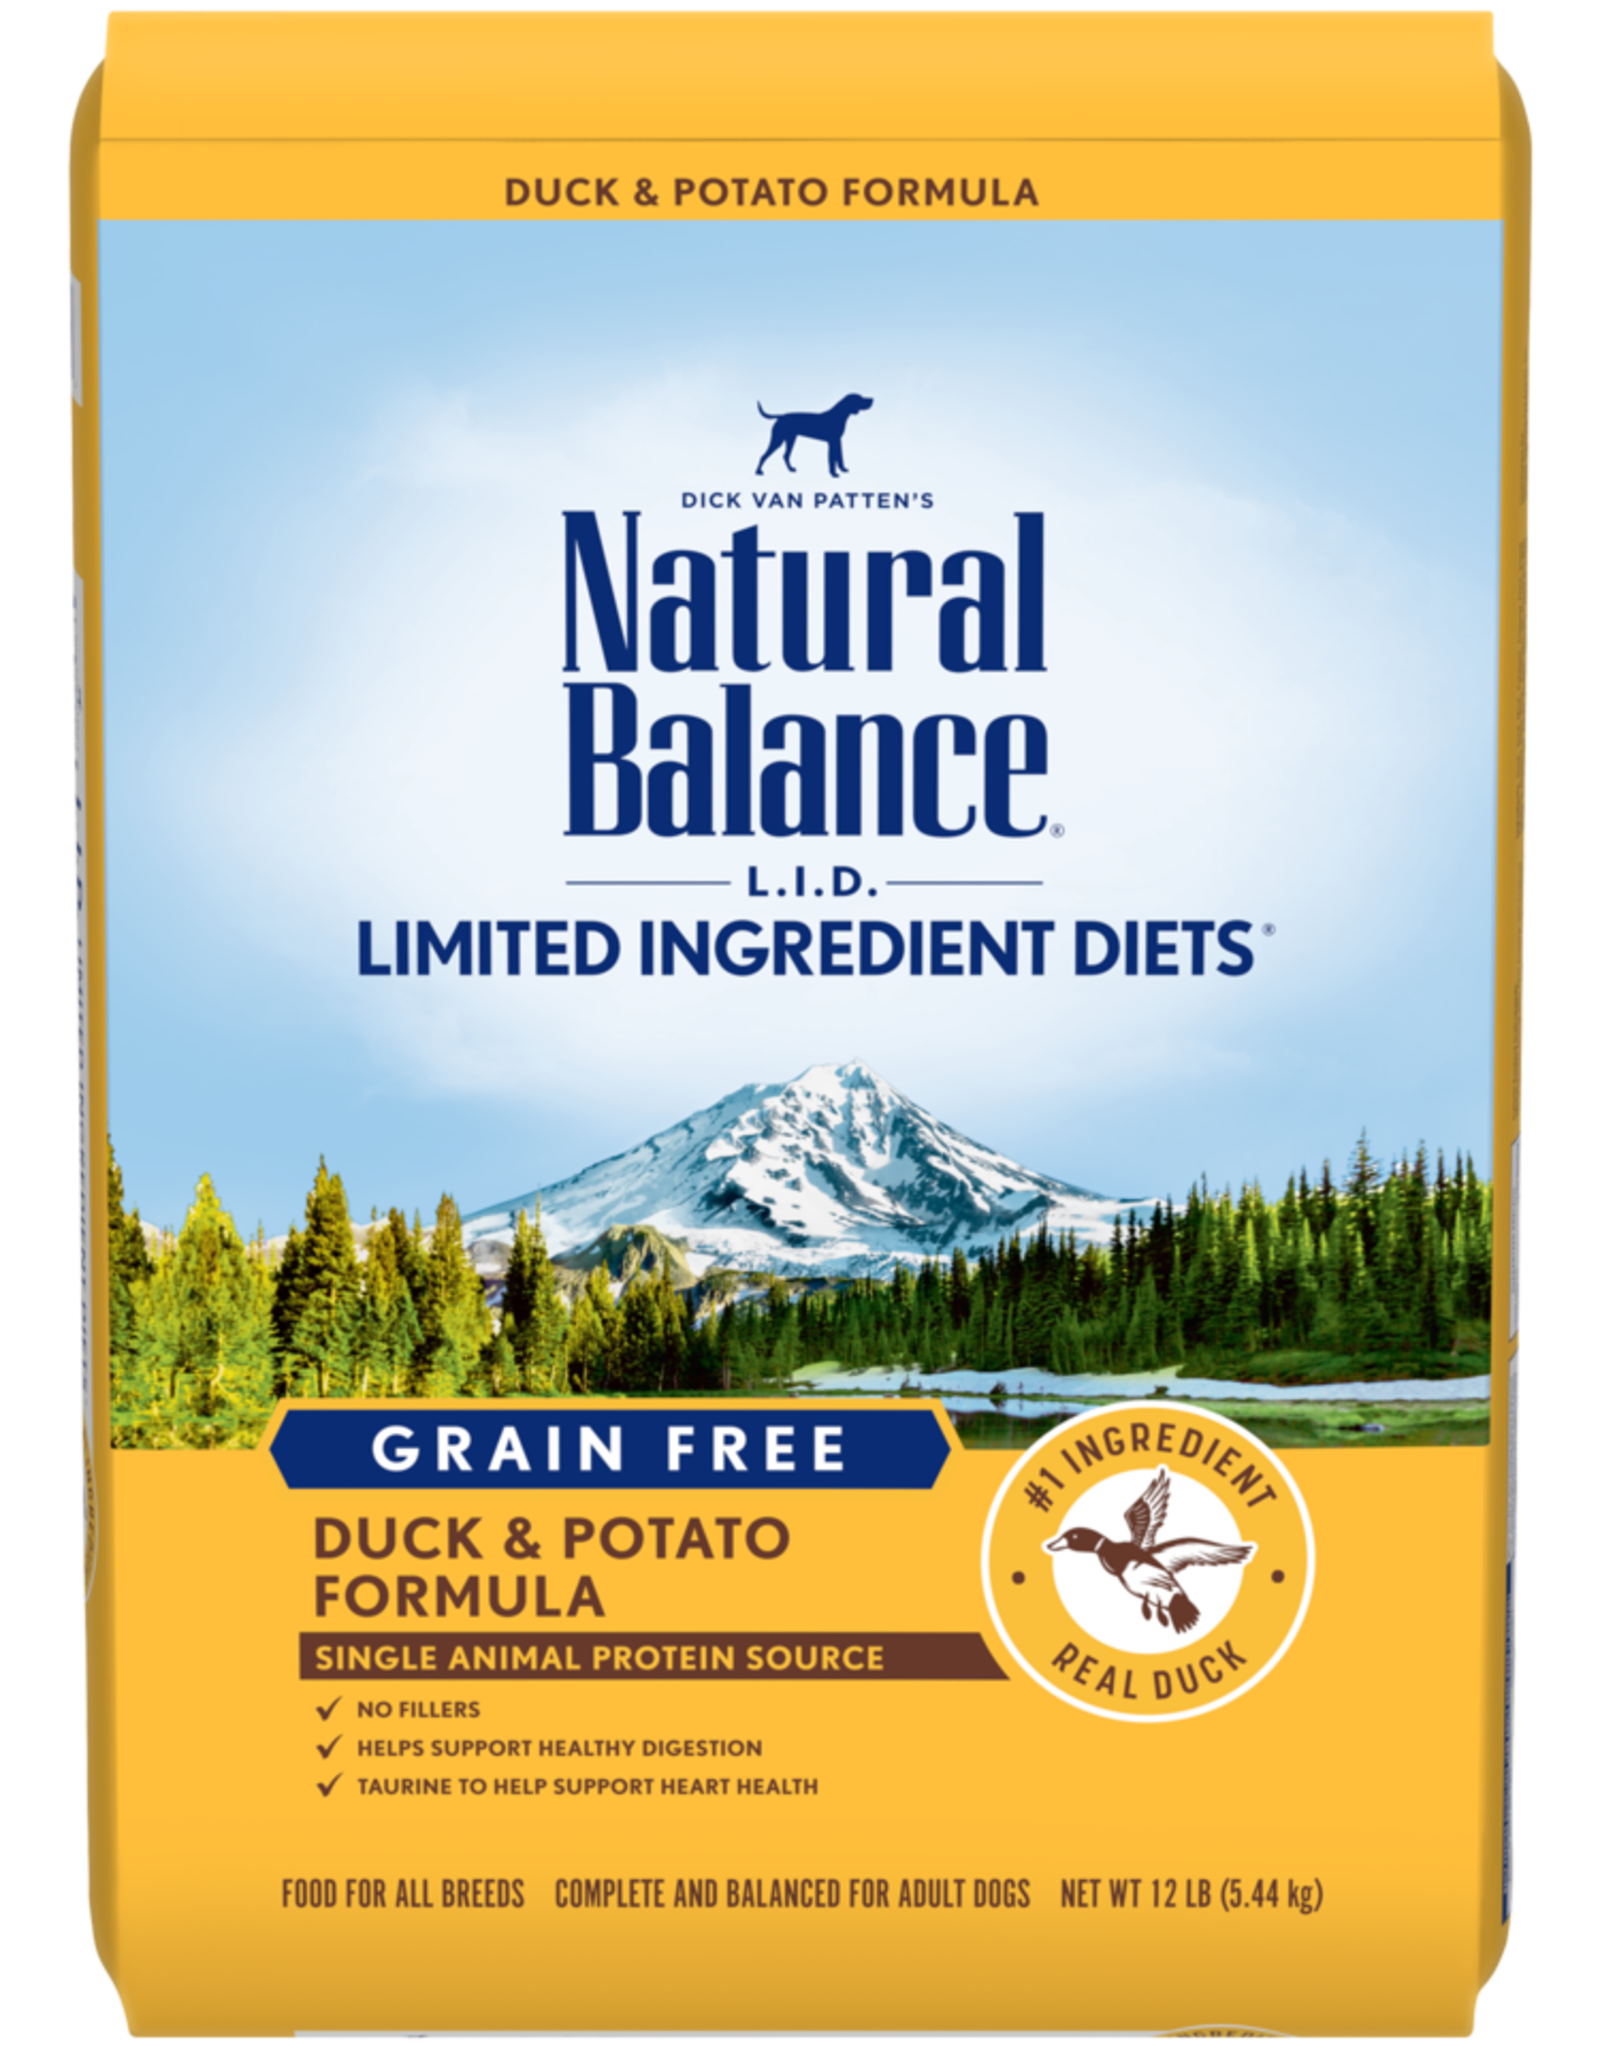 NATURAL BALANCE PET FOODS, INC NATURAL BALANCE DOG GRAIN FREE LID DUCK & POTATO 24LBS